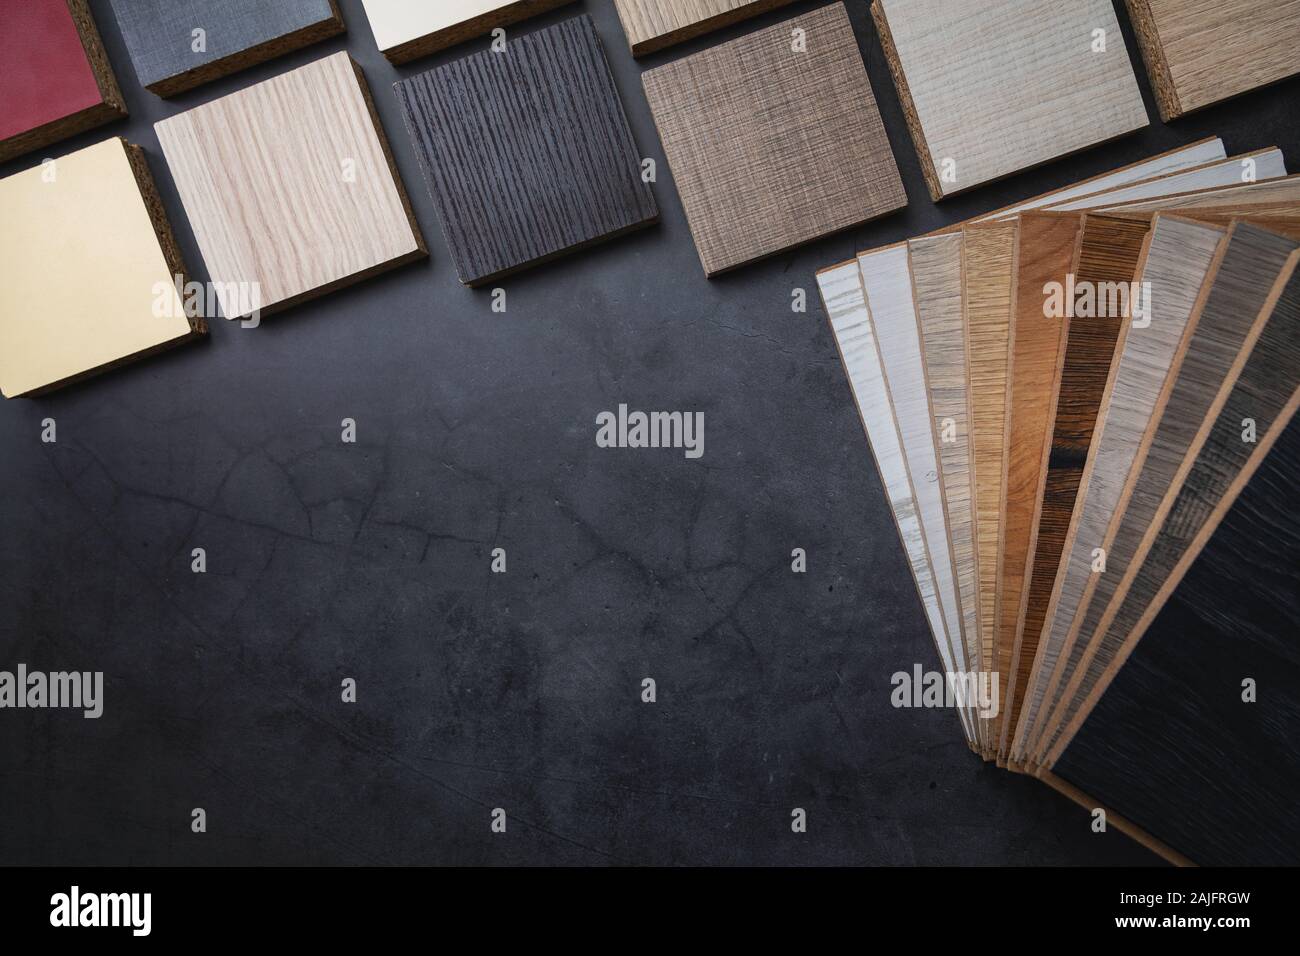 Holzstruktur Laminat fußböden und möbel Material Proben auf dunklem Stein Hintergrund mit Kopie Raum Stockfoto